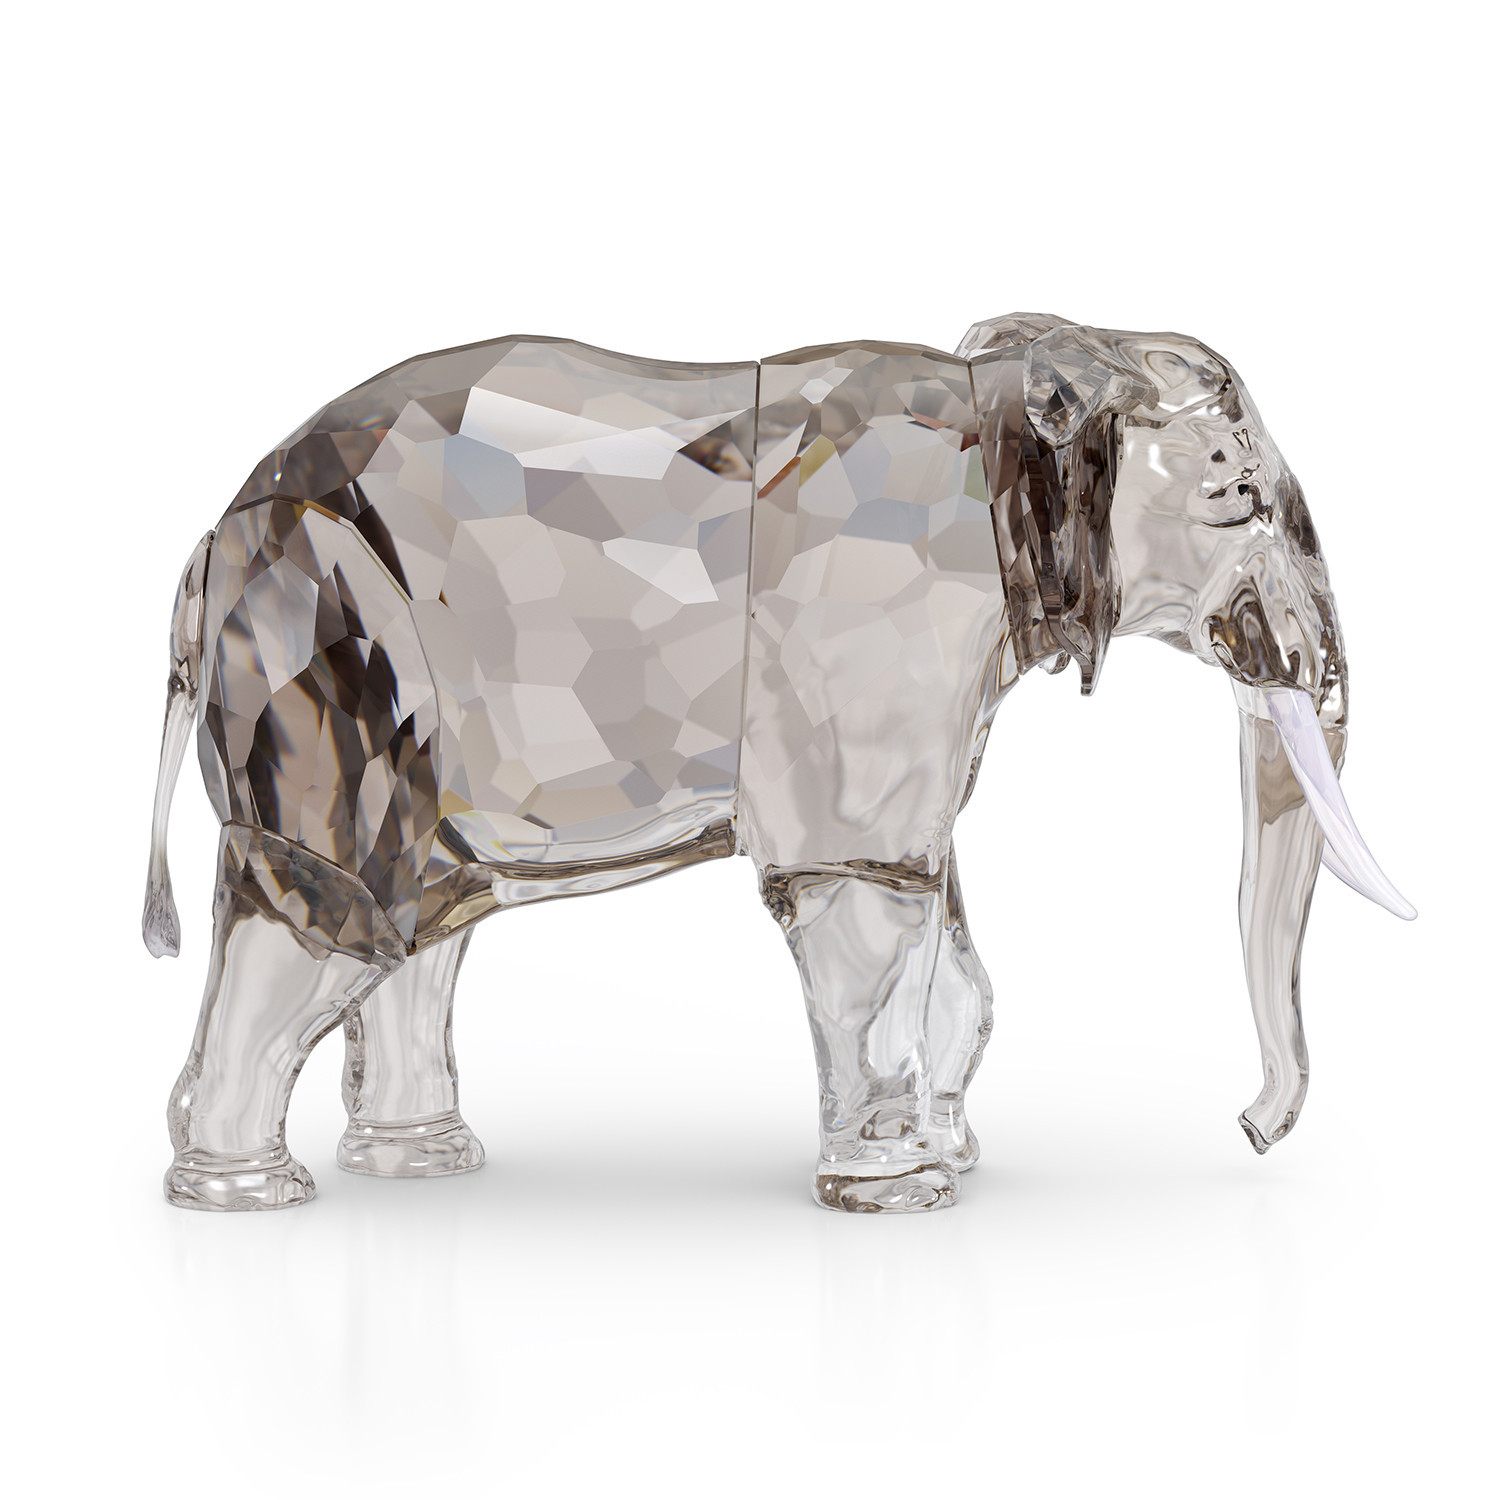 Figurine Swarovski Elephant Fayola